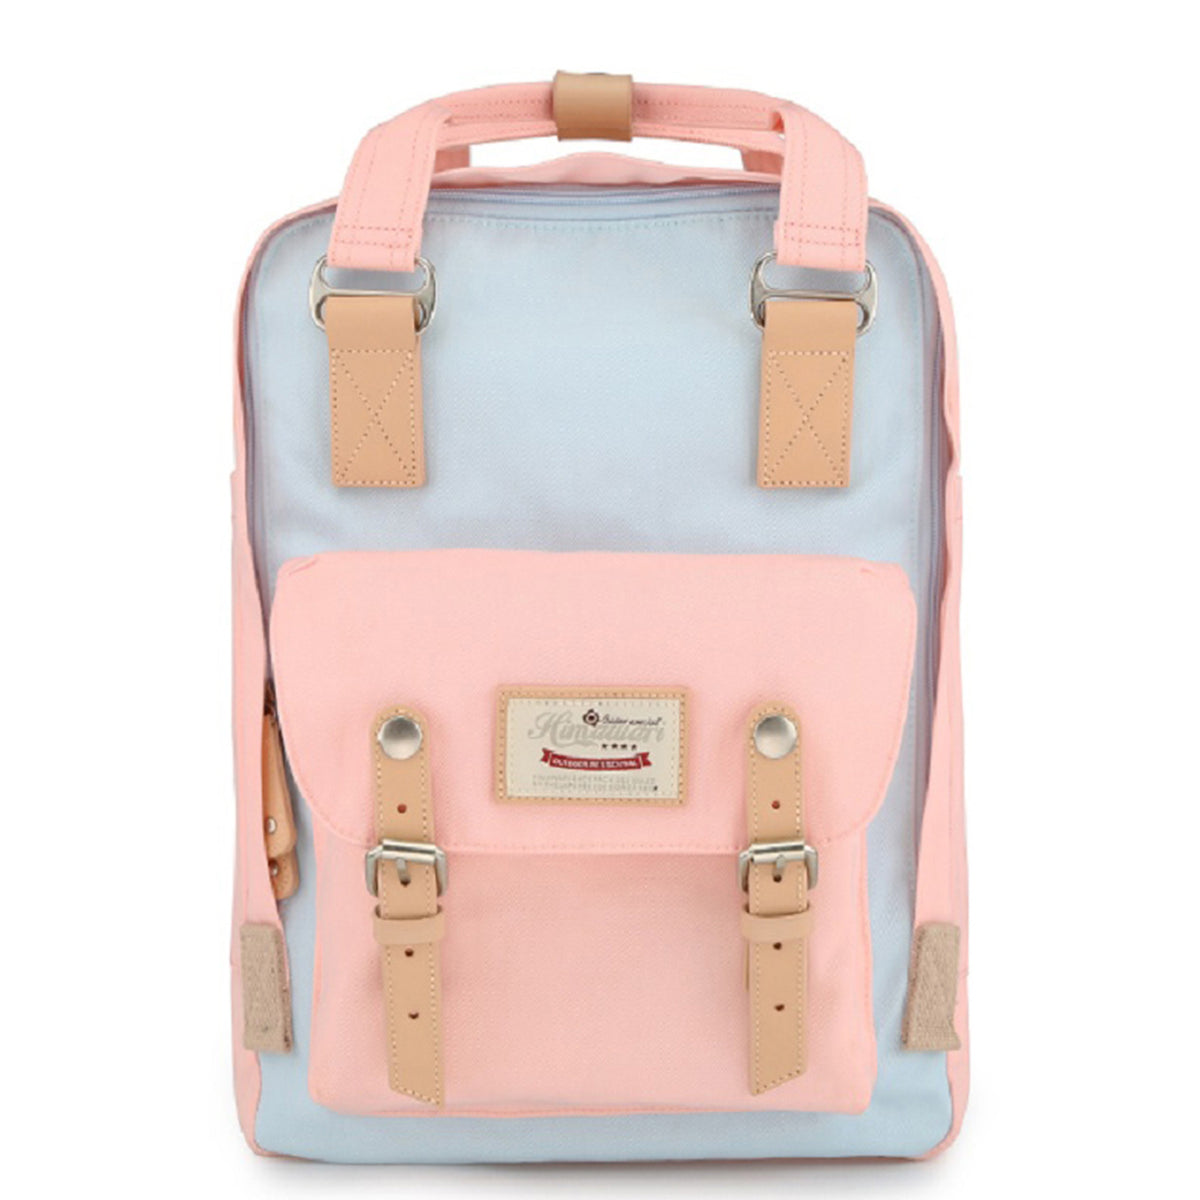 Himawari Vintage Everyday Backpack - Light Blue & Pink